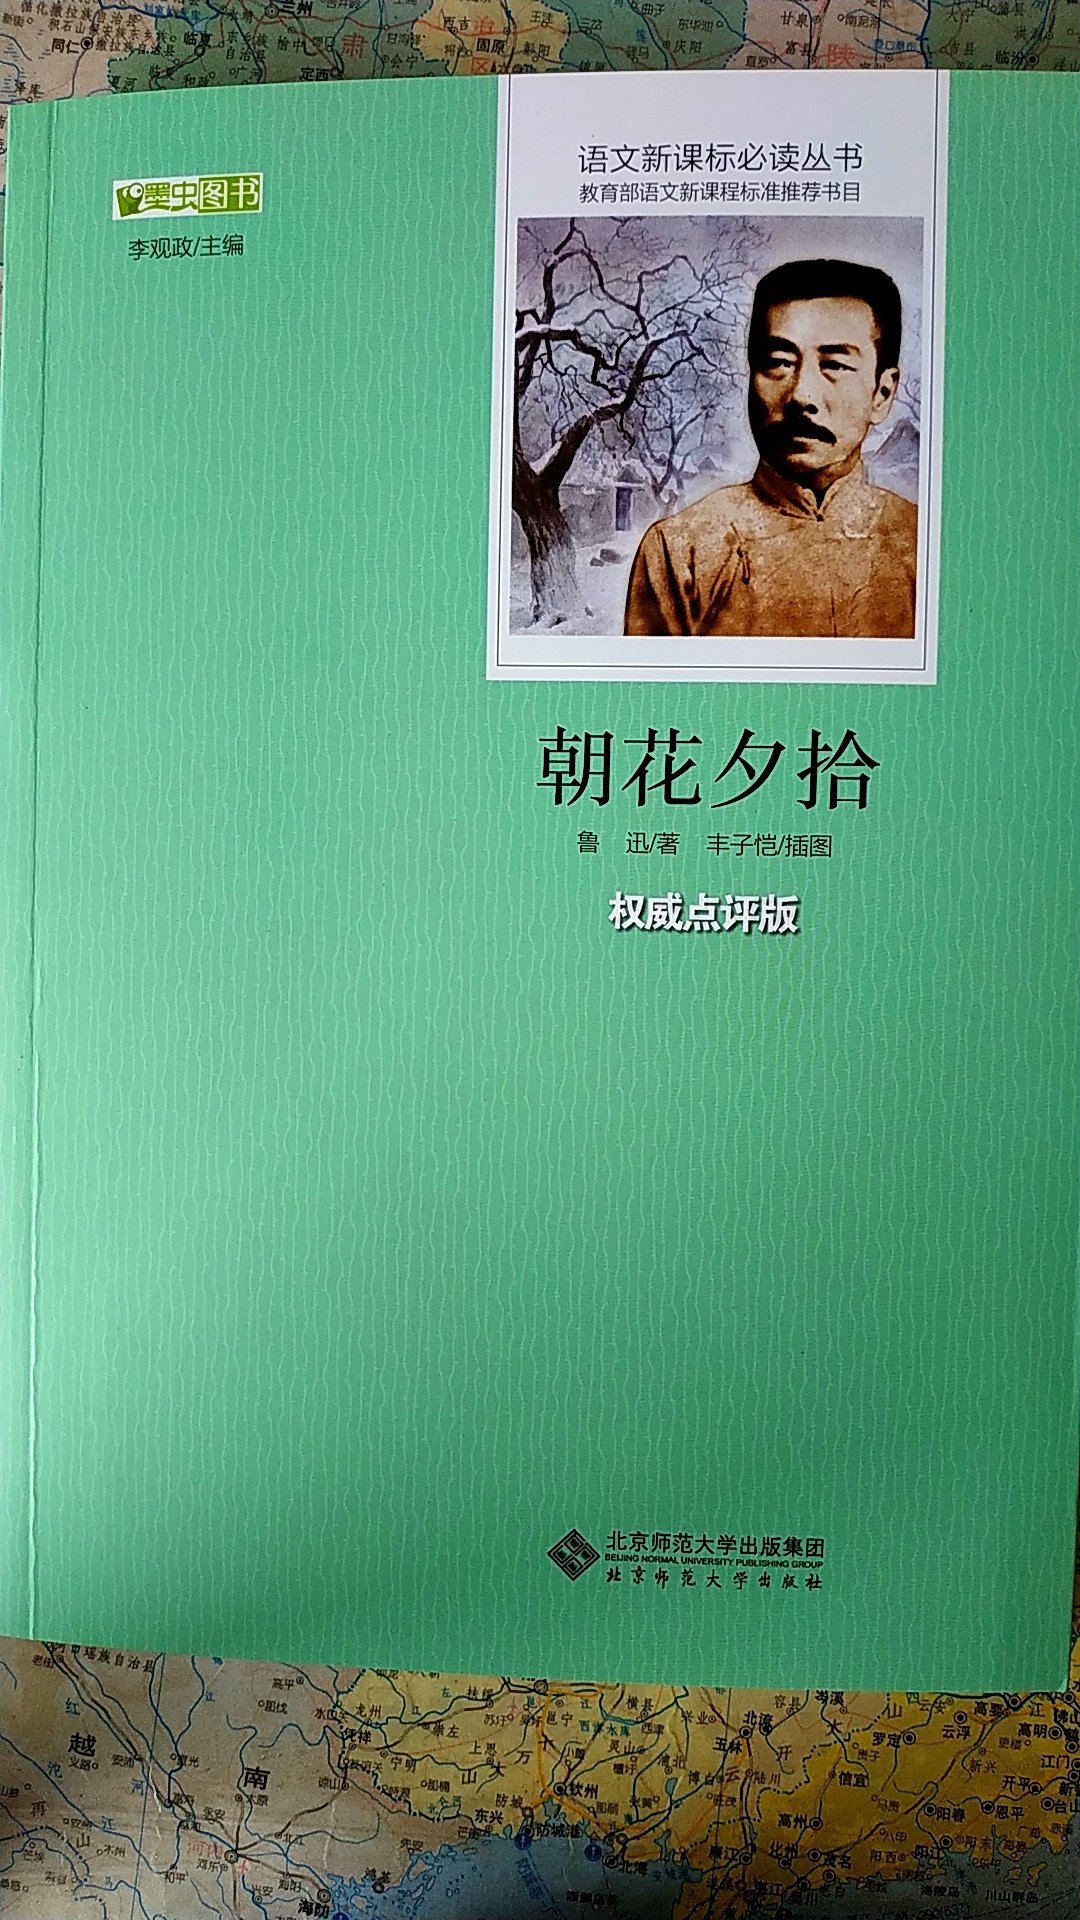 这本图书是北京师范大学出版社出版的，由北京市教育学会会长李观政先生主编。全书印刷精美，字迹清楚，均由名家作图。的物流速度非常的快，早上购买的，下午就到了。印刷日期也是2018年新印刷的。正品，好评！